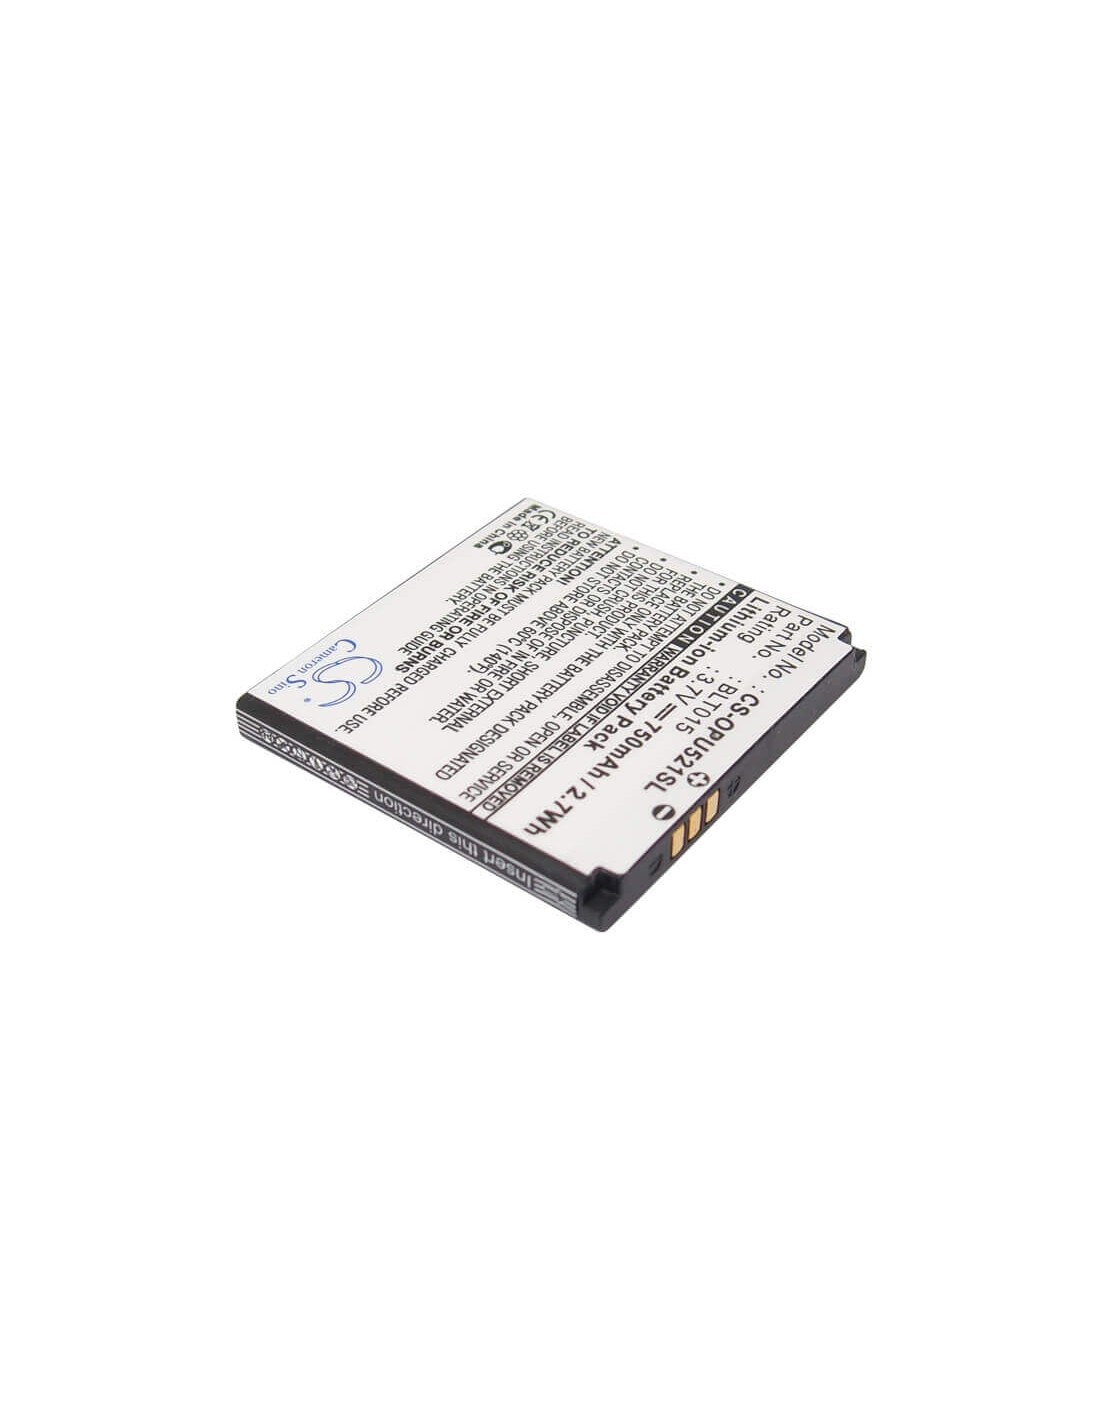 Battery for OPPO U521 3.7V, 750mAh - 2.78Wh